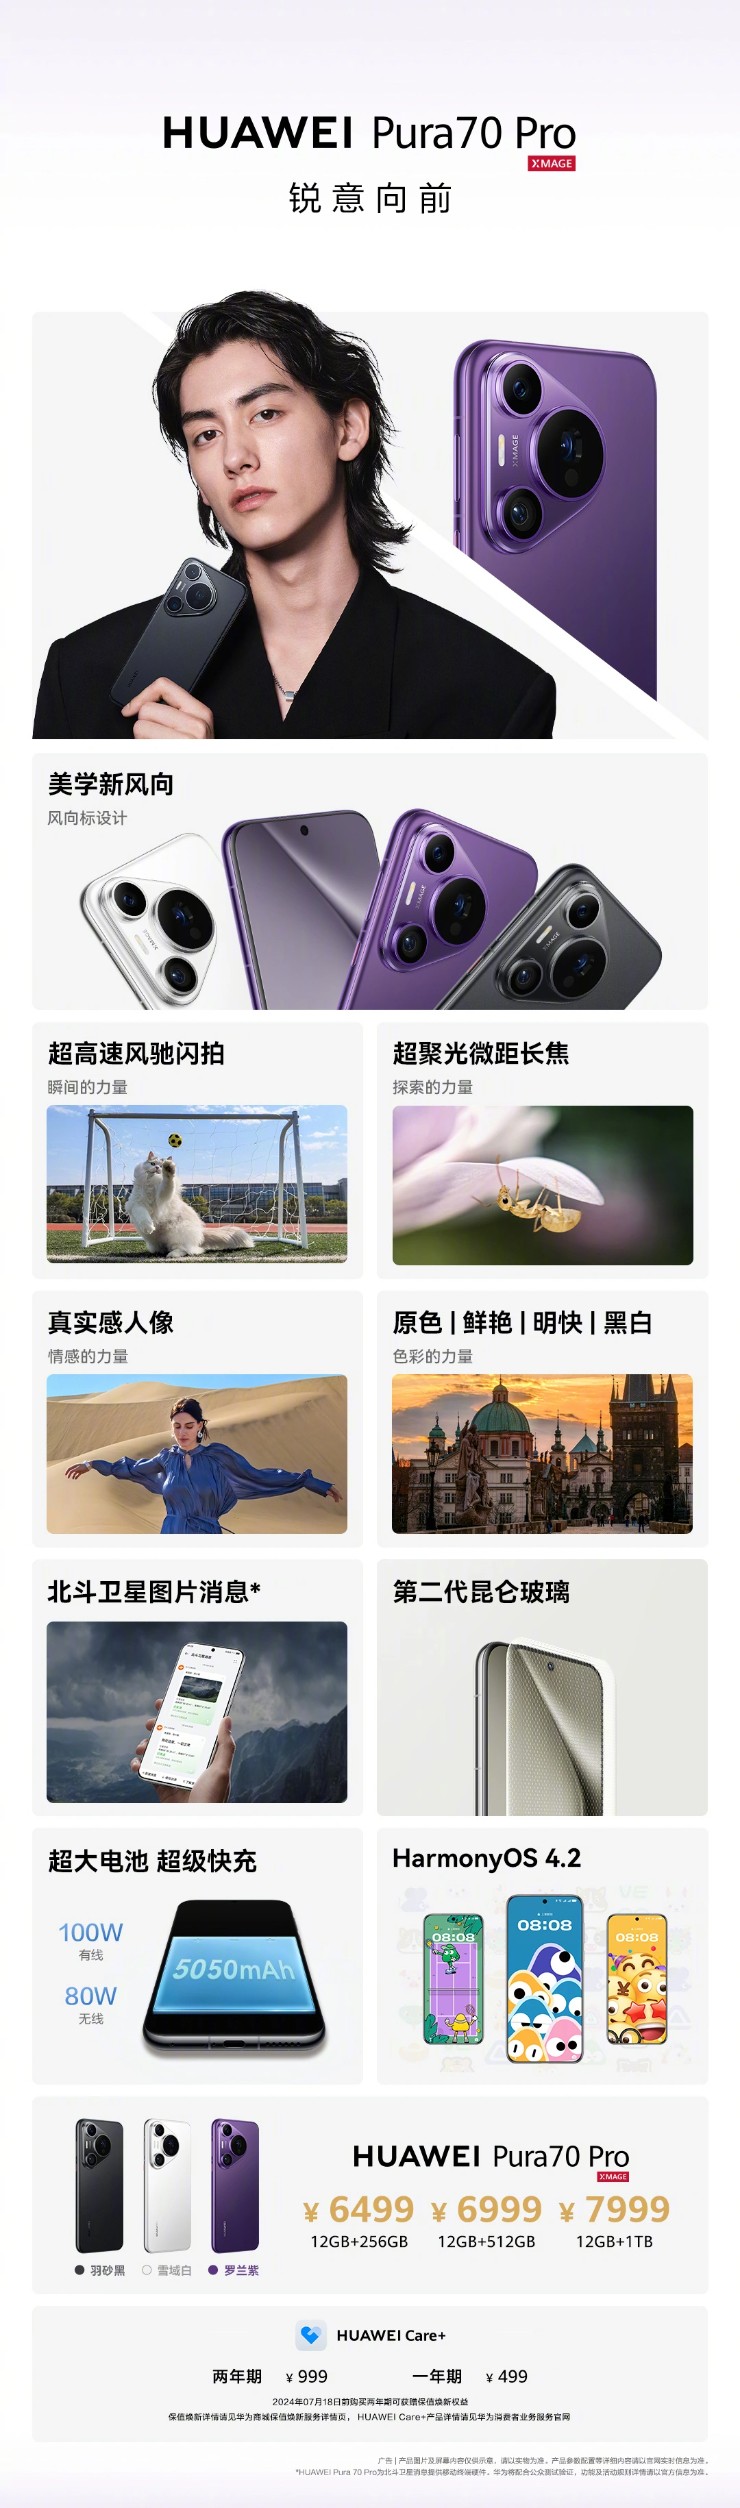 Huawei tiếp tục gây sức ép lên Apple với dòng smartphone mới - 6